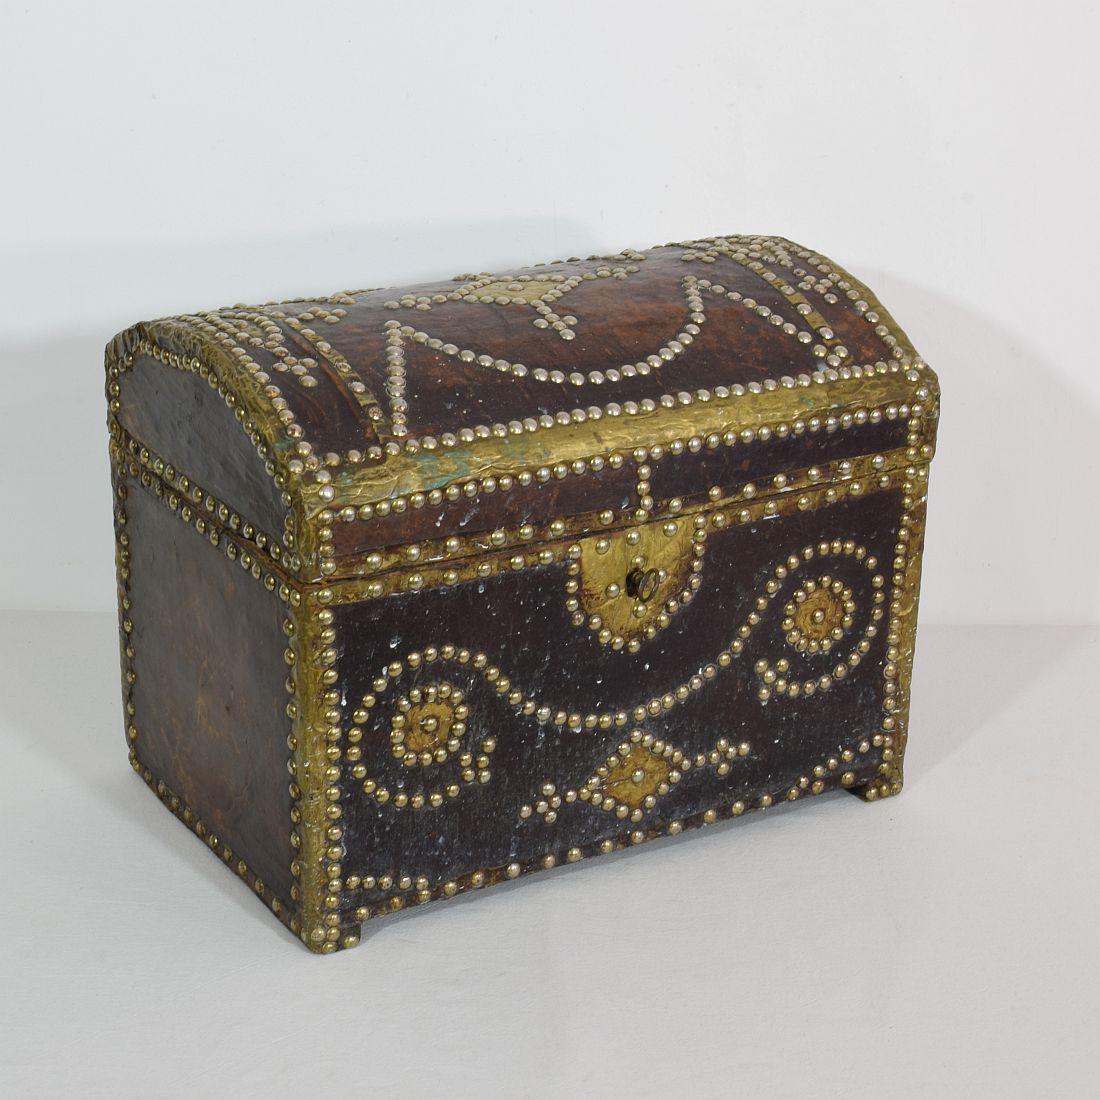 Magnifique boîte d'art populaire en bois, recouverte de cuir. La serrure et la clé fonctionnent.
France, vers 1850
Vieillissement, petites pertes.